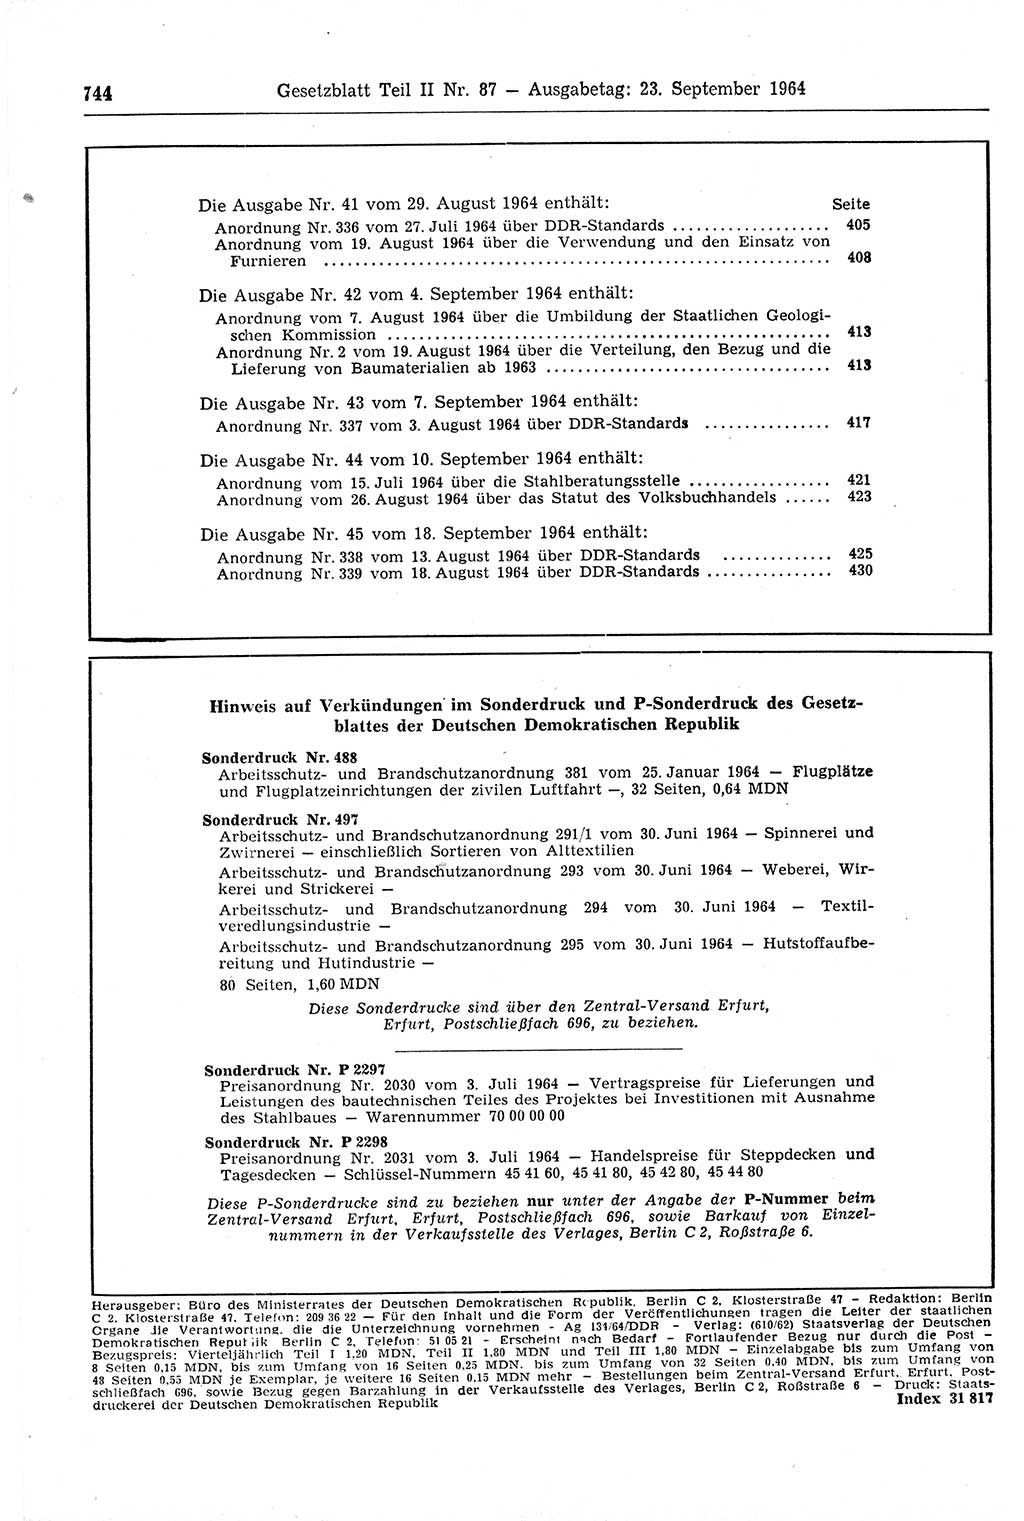 Gesetzblatt (GBl.) der Deutschen Demokratischen Republik (DDR) Teil ⅠⅠ 1964, Seite 744 (GBl. DDR ⅠⅠ 1964, S. 744)